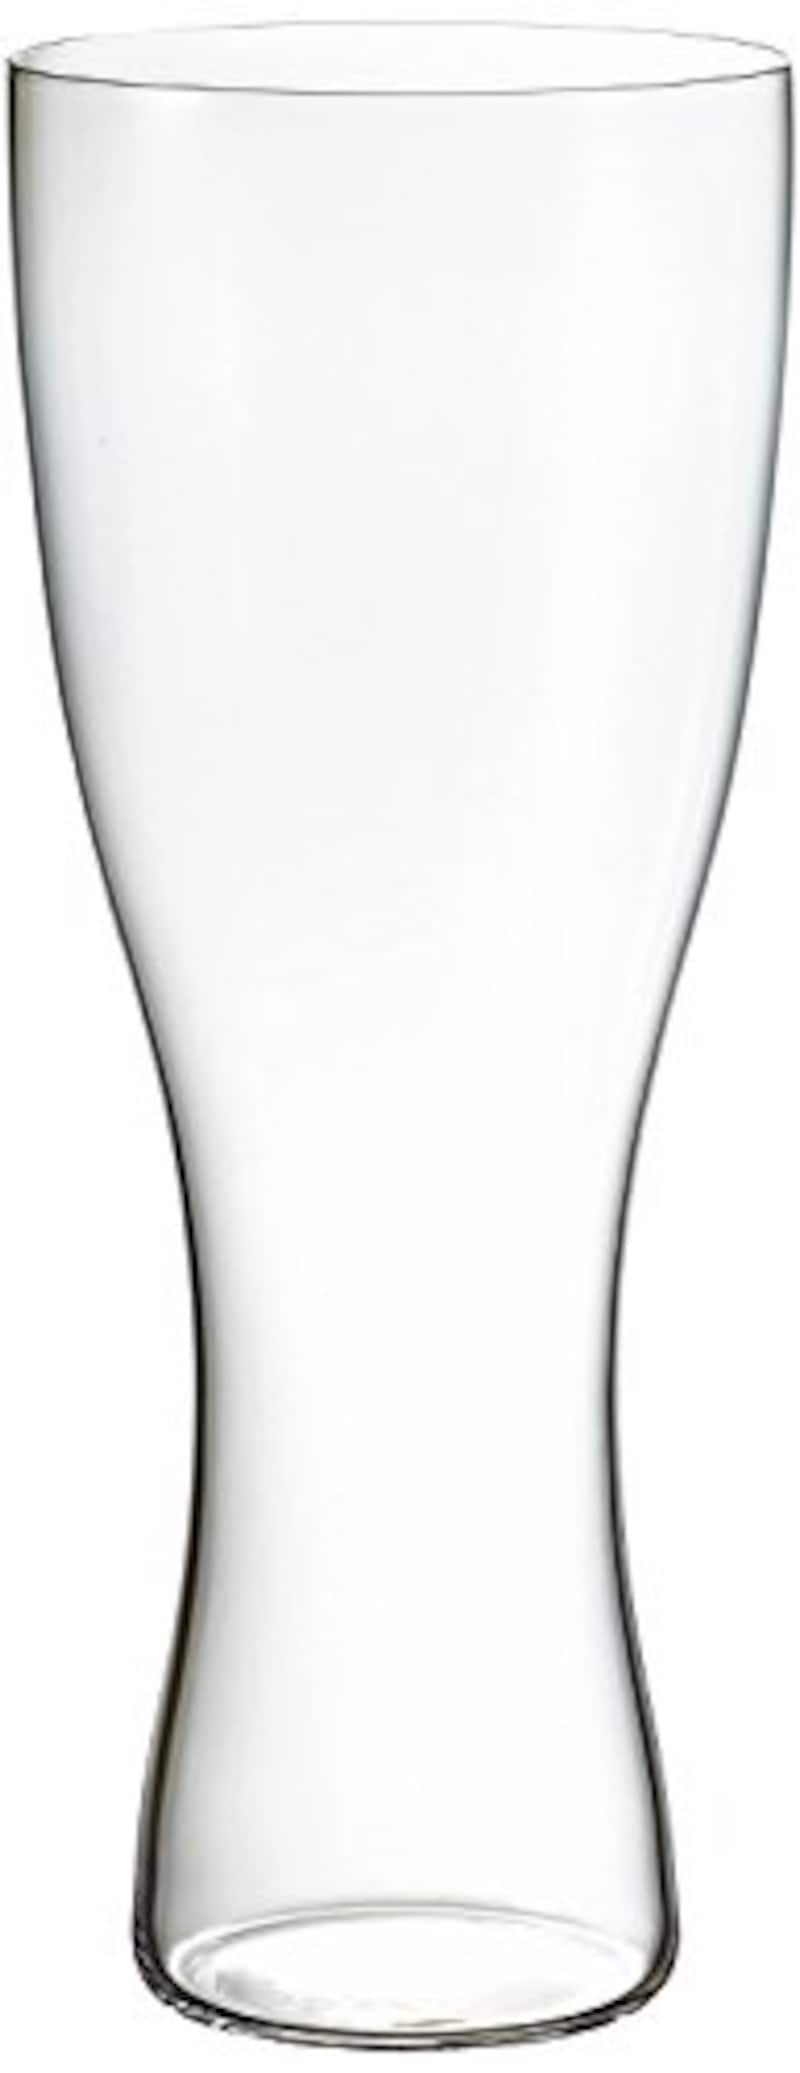 松徳硝子,ビールグラスピルスナー,2941001